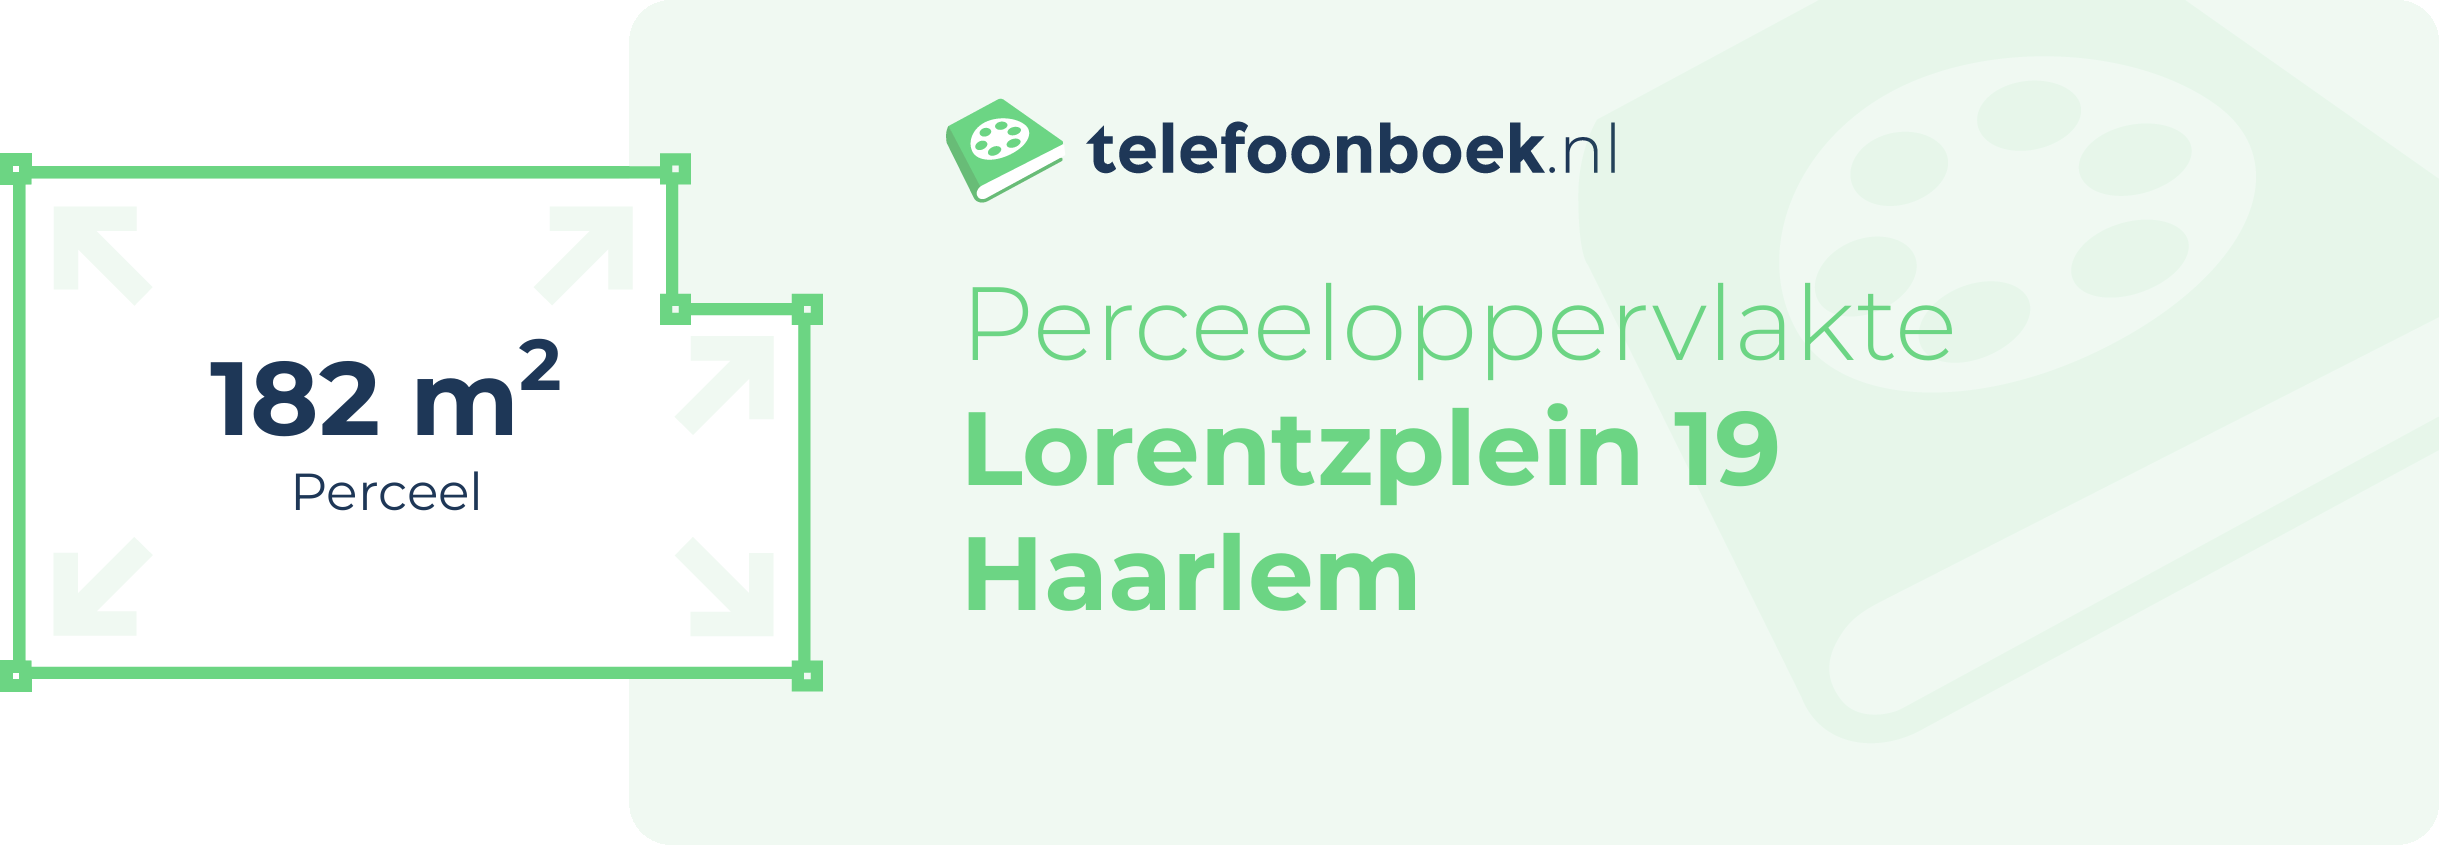 Perceeloppervlakte Lorentzplein 19 Haarlem